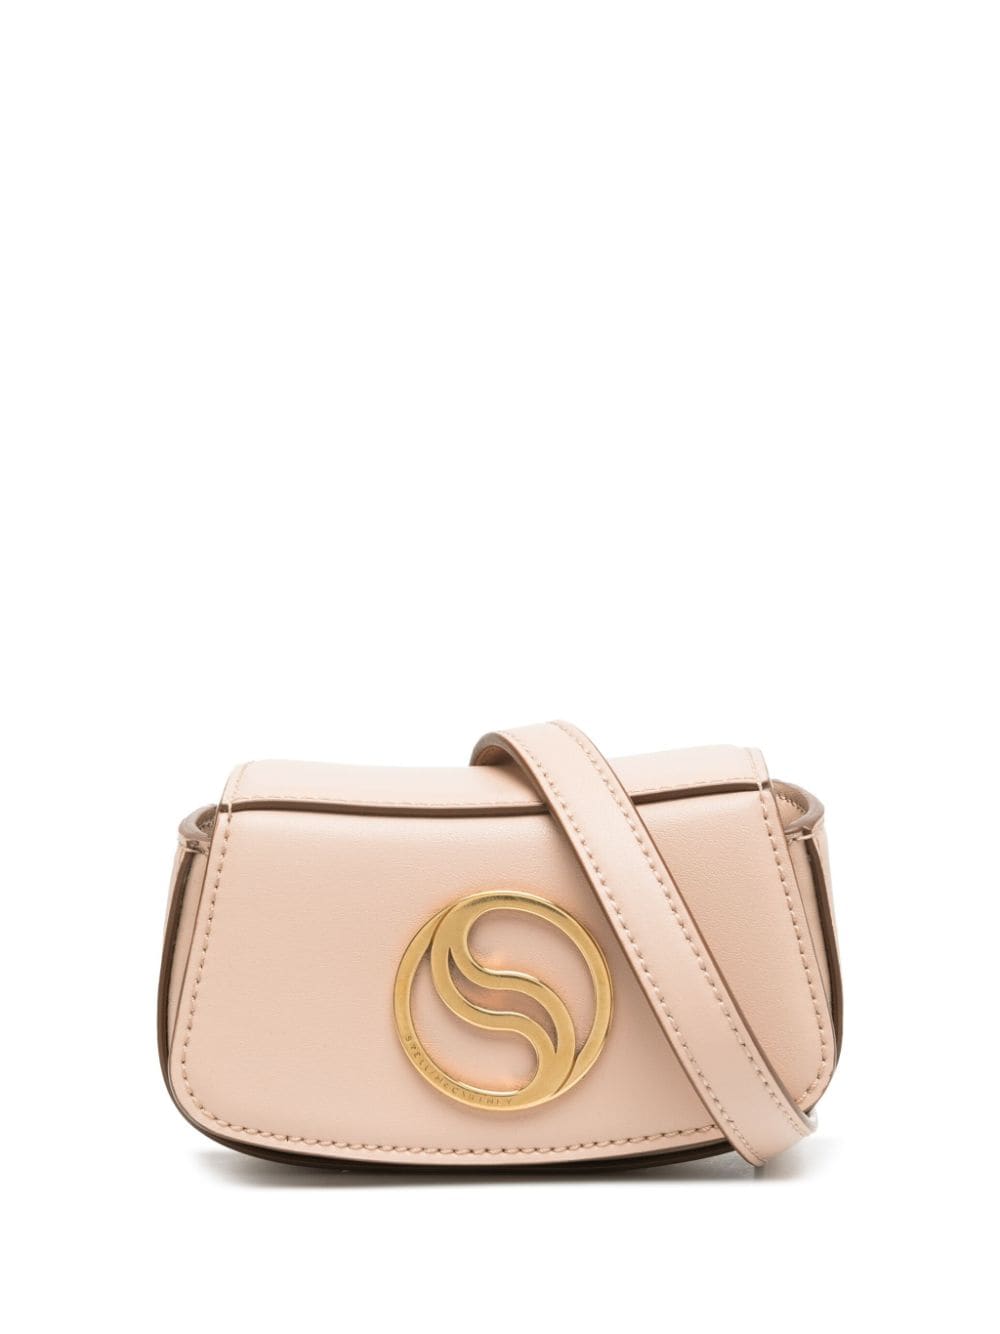 Stella Mccartney S-wave Mini Bag In Neutrals